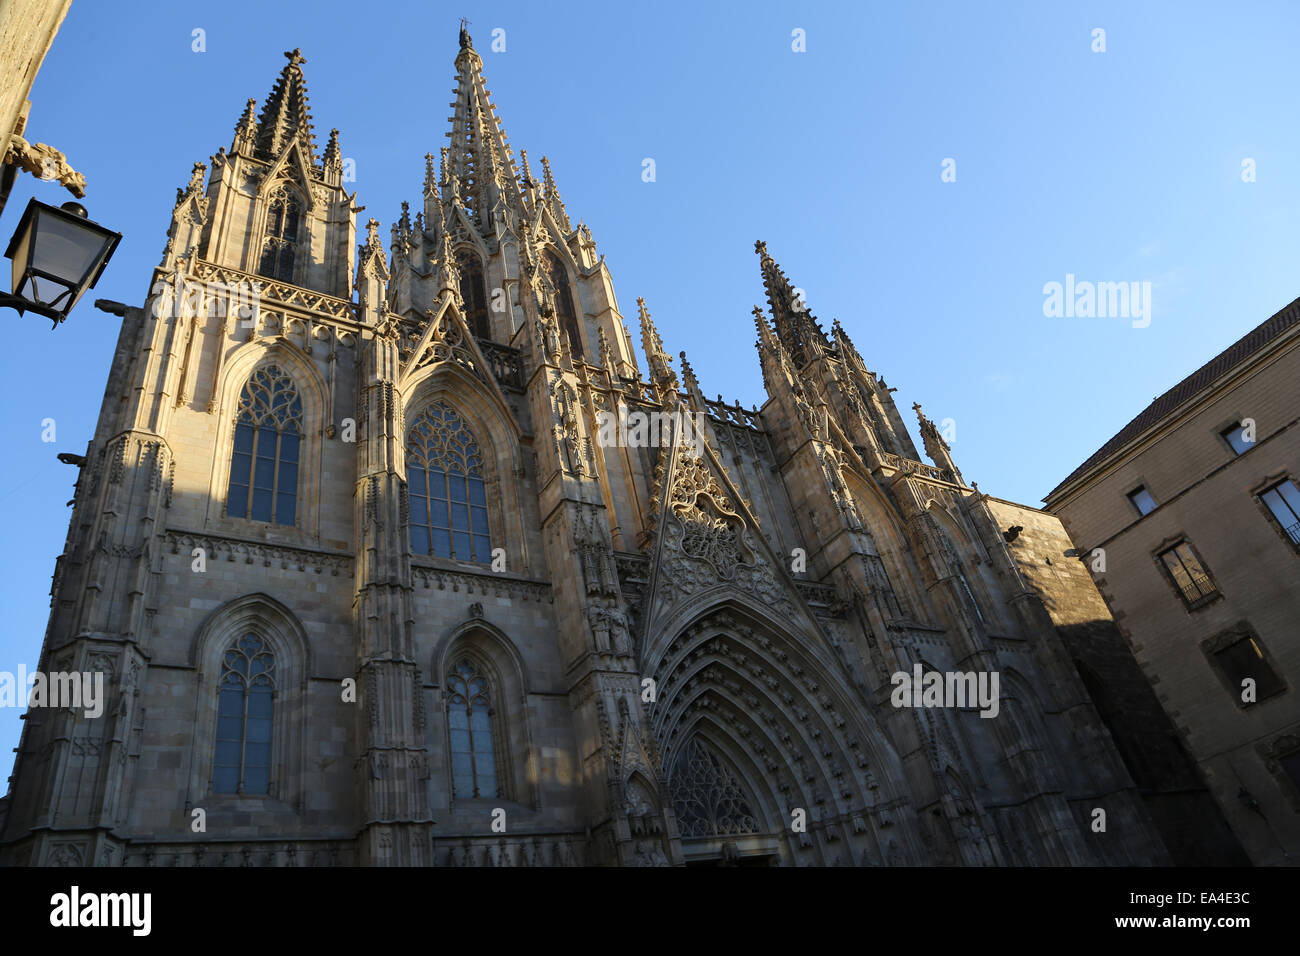 Spagna. La Catalogna. La cattedrale di Barcellona. Esterno. Facciata neogotica. Xix secolo. Foto Stock